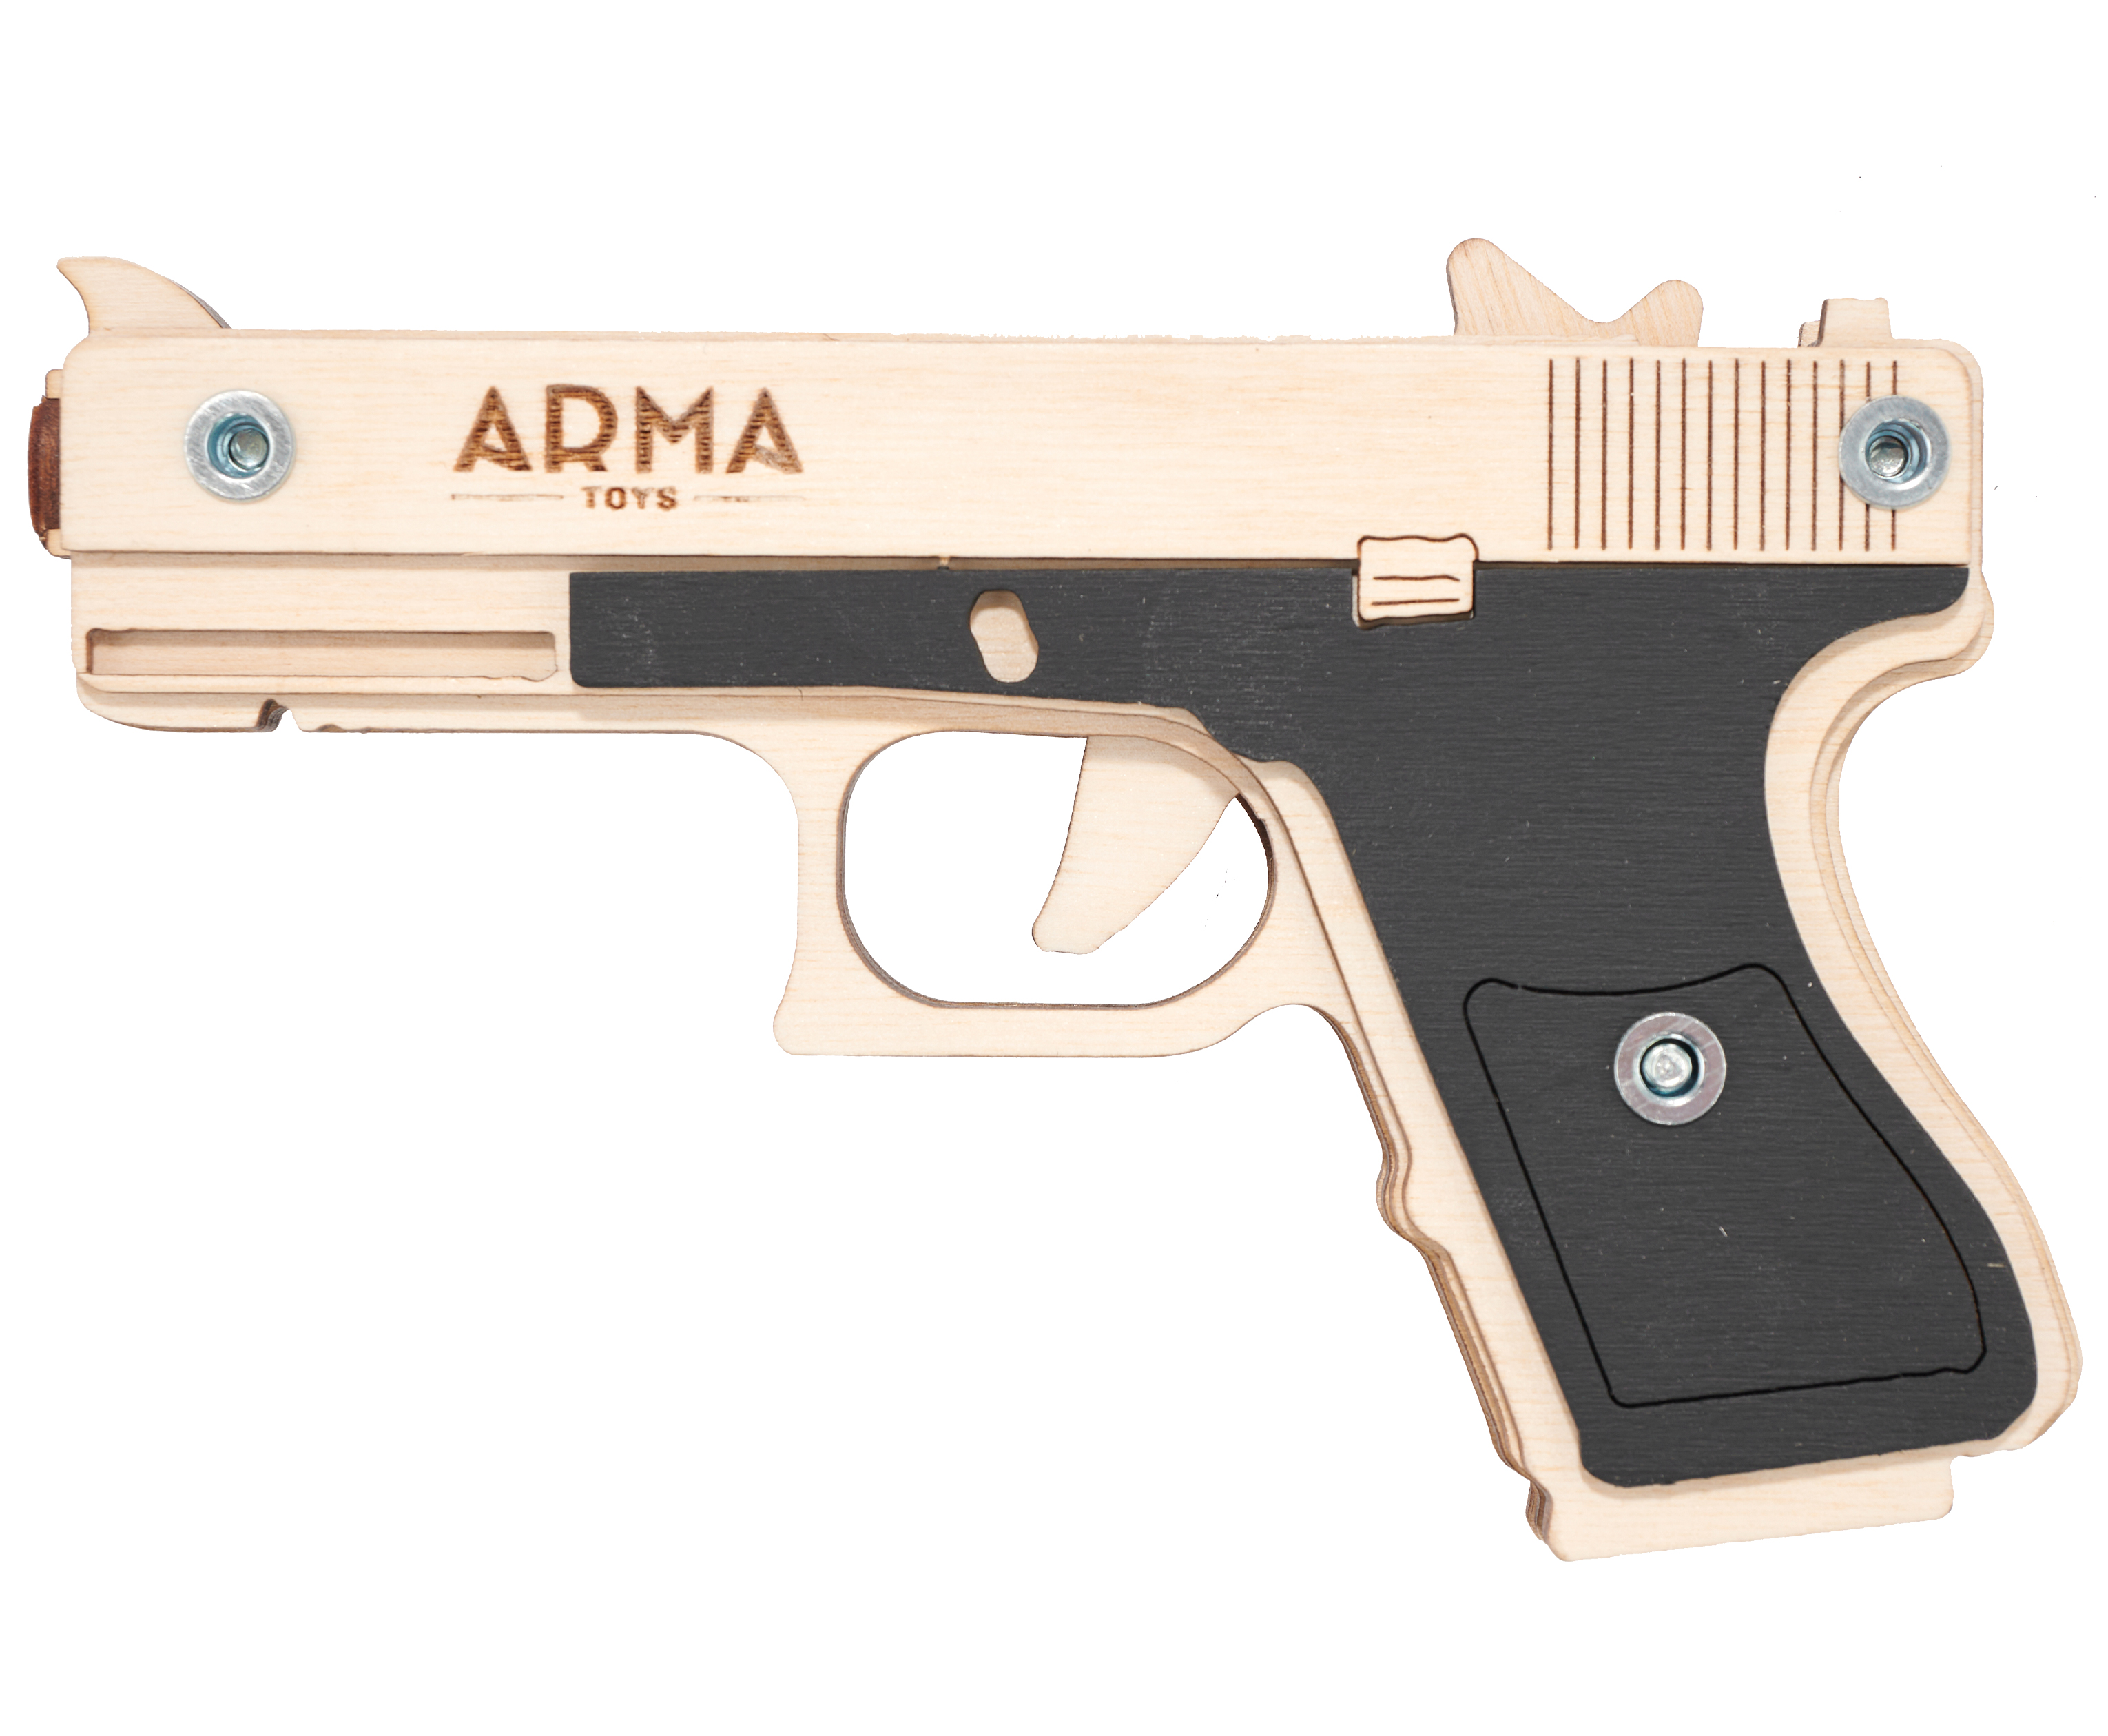 Резинкострел игрушечный Arma toys пистолет Glock Light макет, Глок 26, AT027, окрашенный резинкострел arma toys автомат ак 12 макет калашников at039